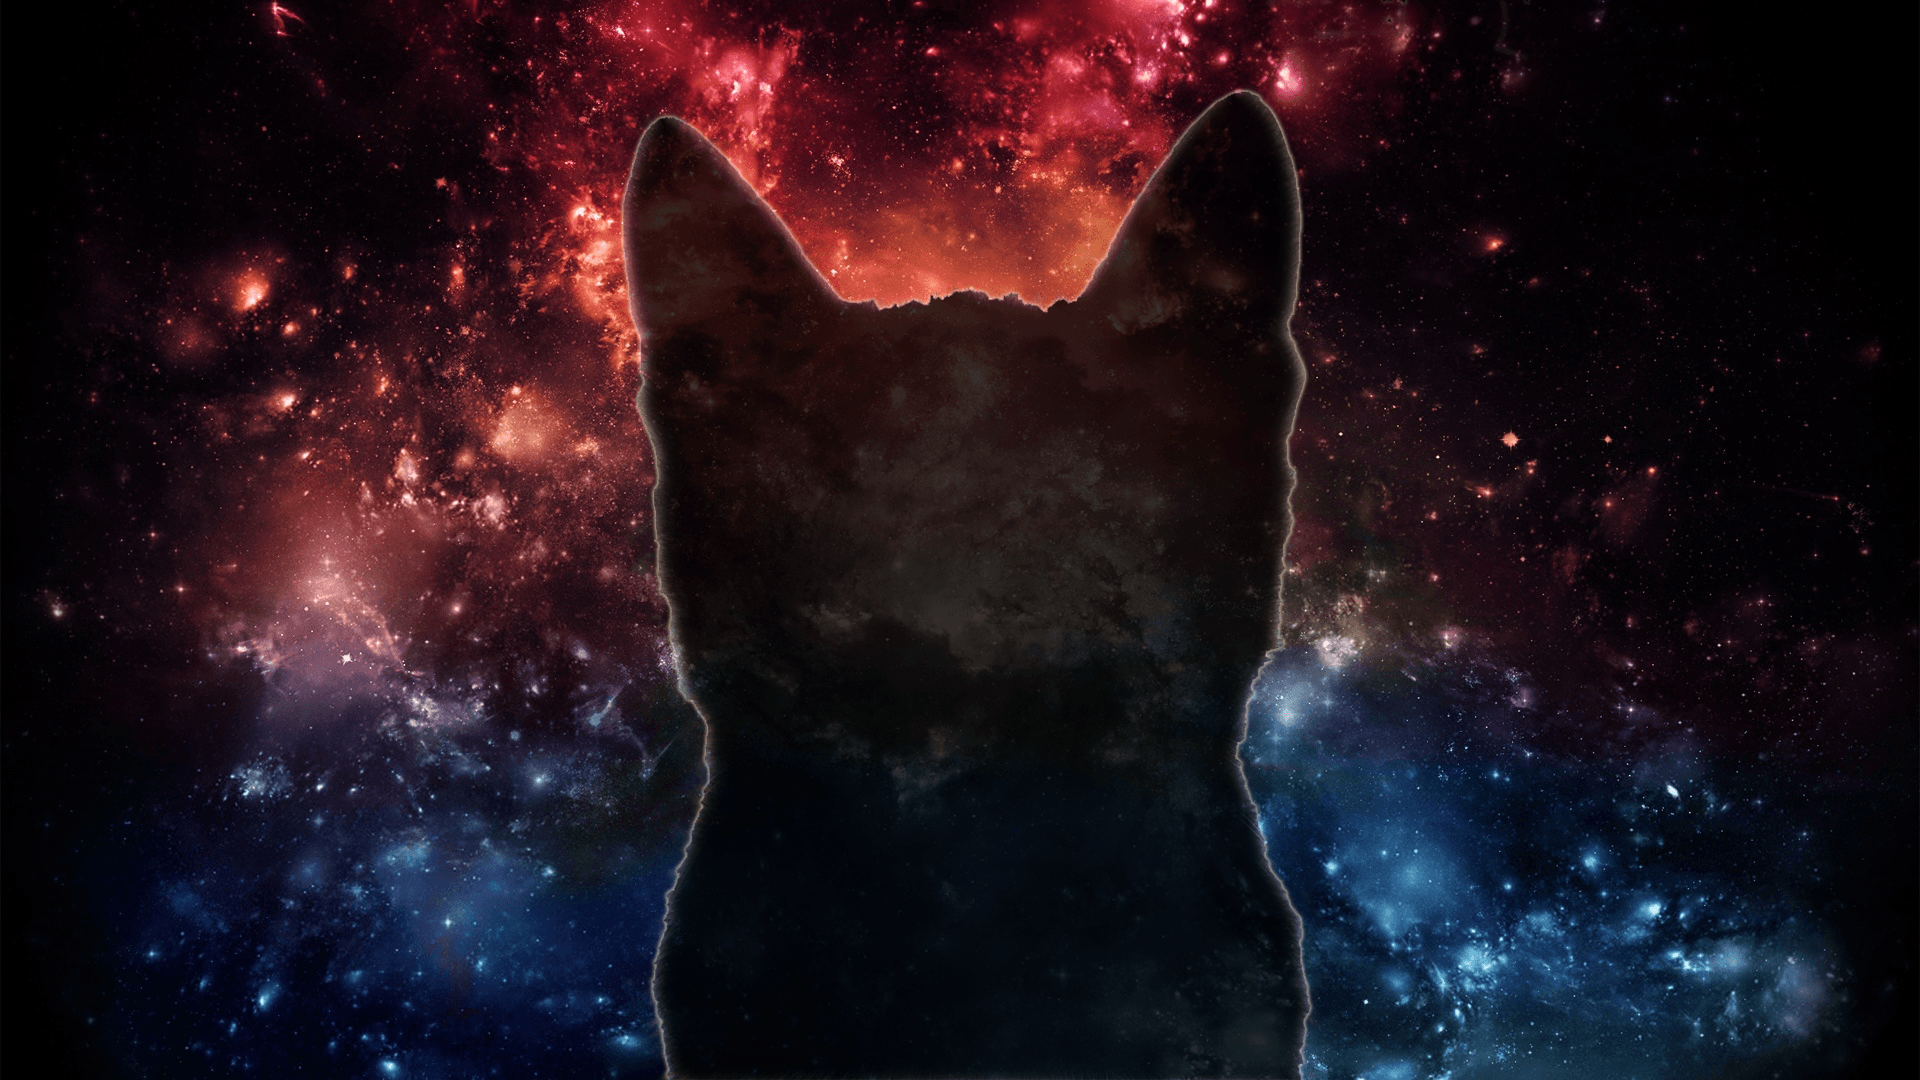 Download Galaxy Moon And Cat Fantasy Artwork Wallpaper  Wallpaperscom